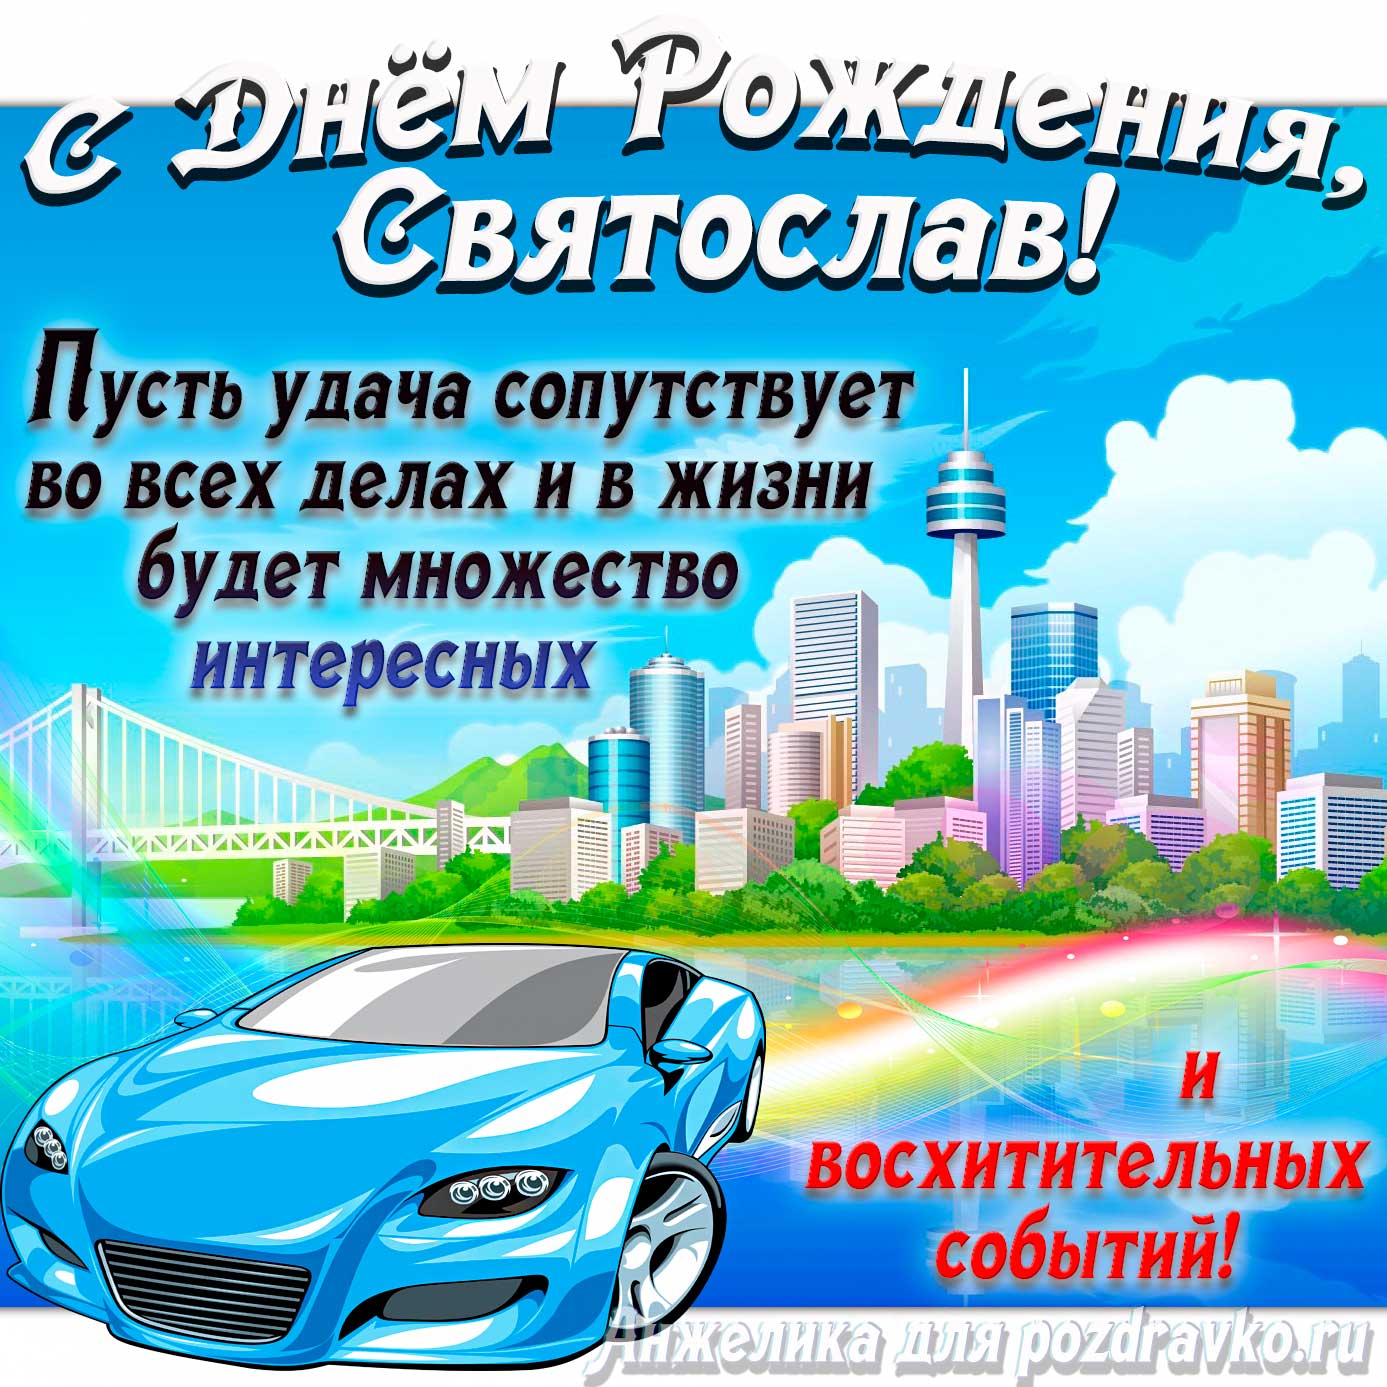 Открытка - с Днём Рождения Святослав с голубой машиной и пожеланием. Скачать бесплатно или отправить картинку.